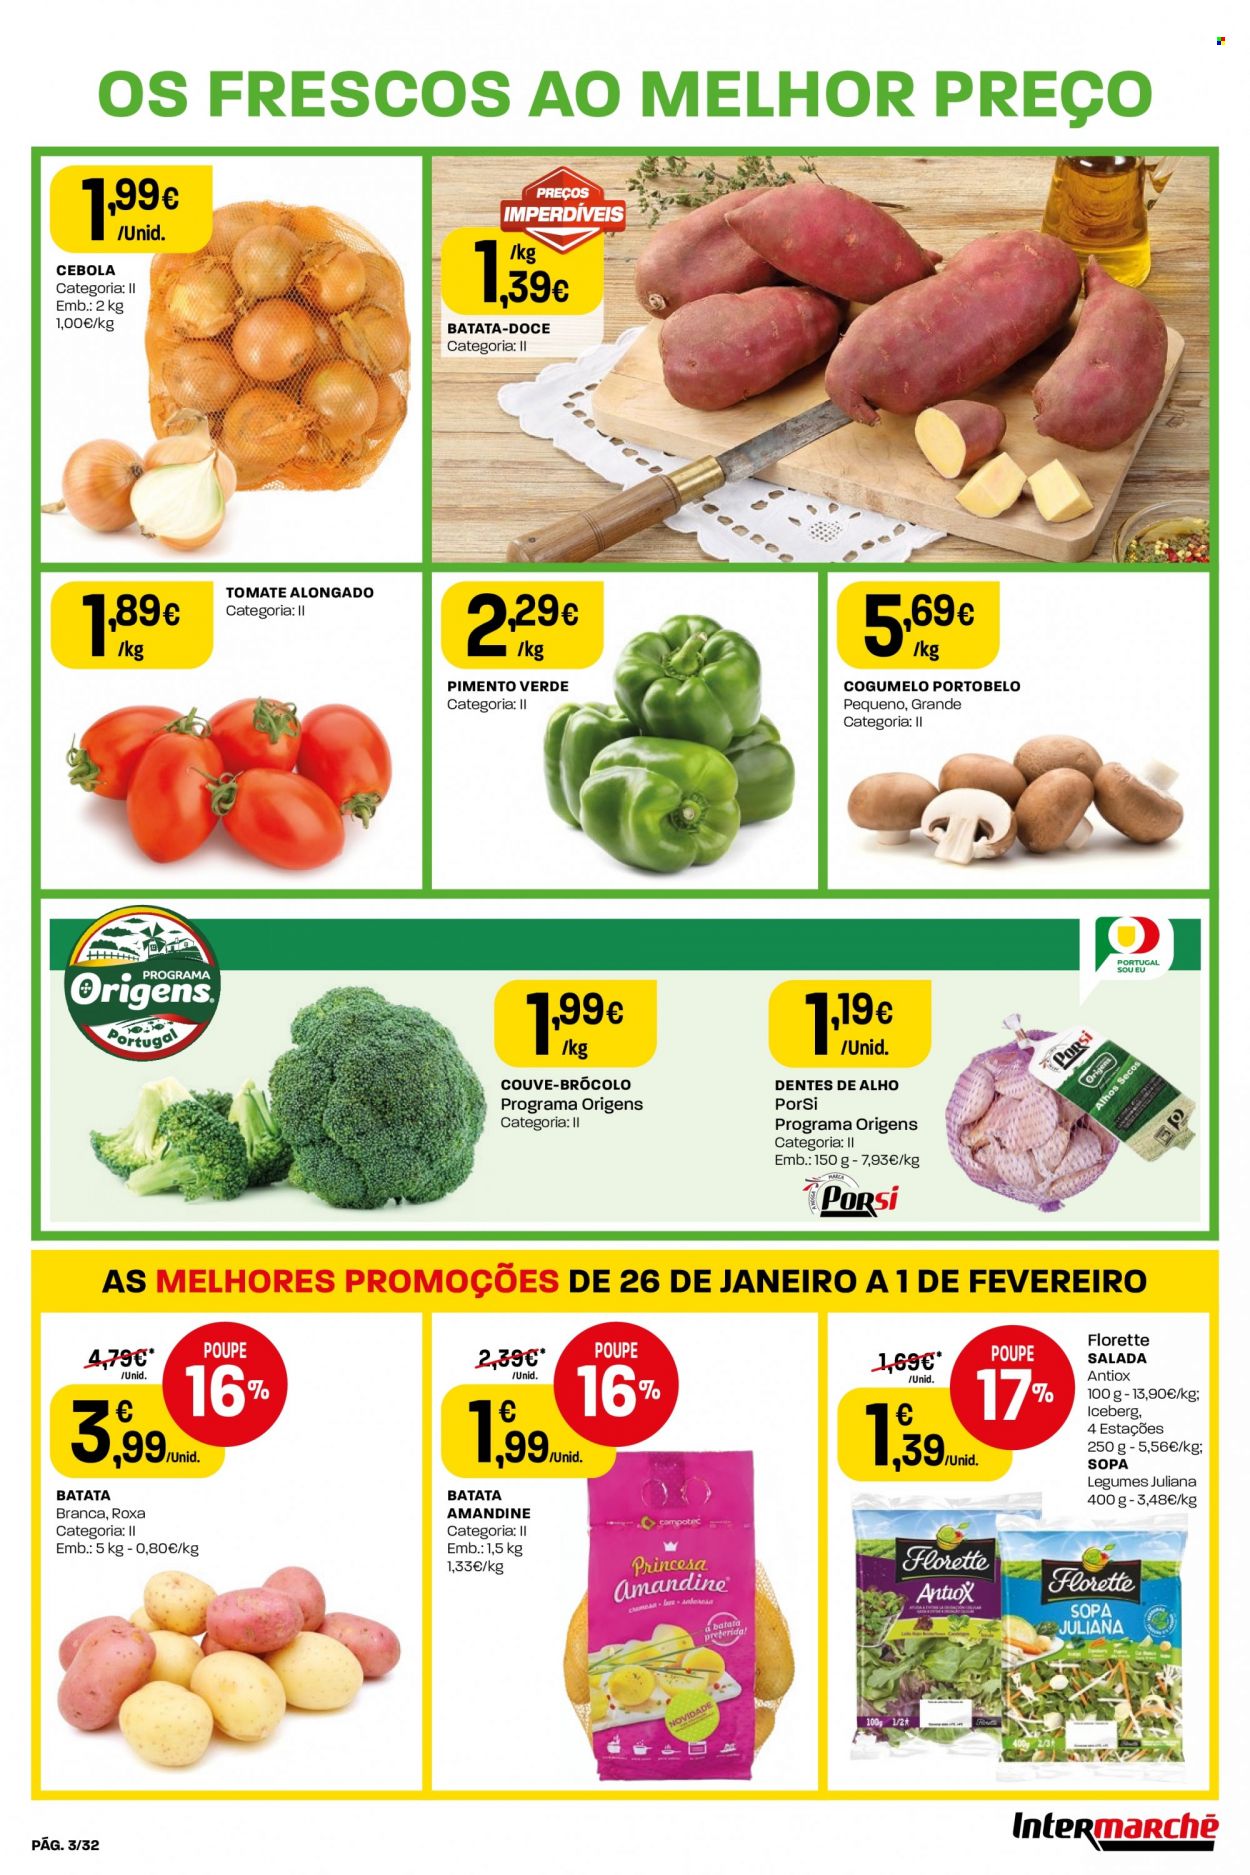 thumbnail - Folheto Intermarché - 26.1.2023 - 1.2.2023 - Produtos em promoção - batata-doce, batata, salada, couve, cebola, pimento, cogumelo, sopa. Página 3.